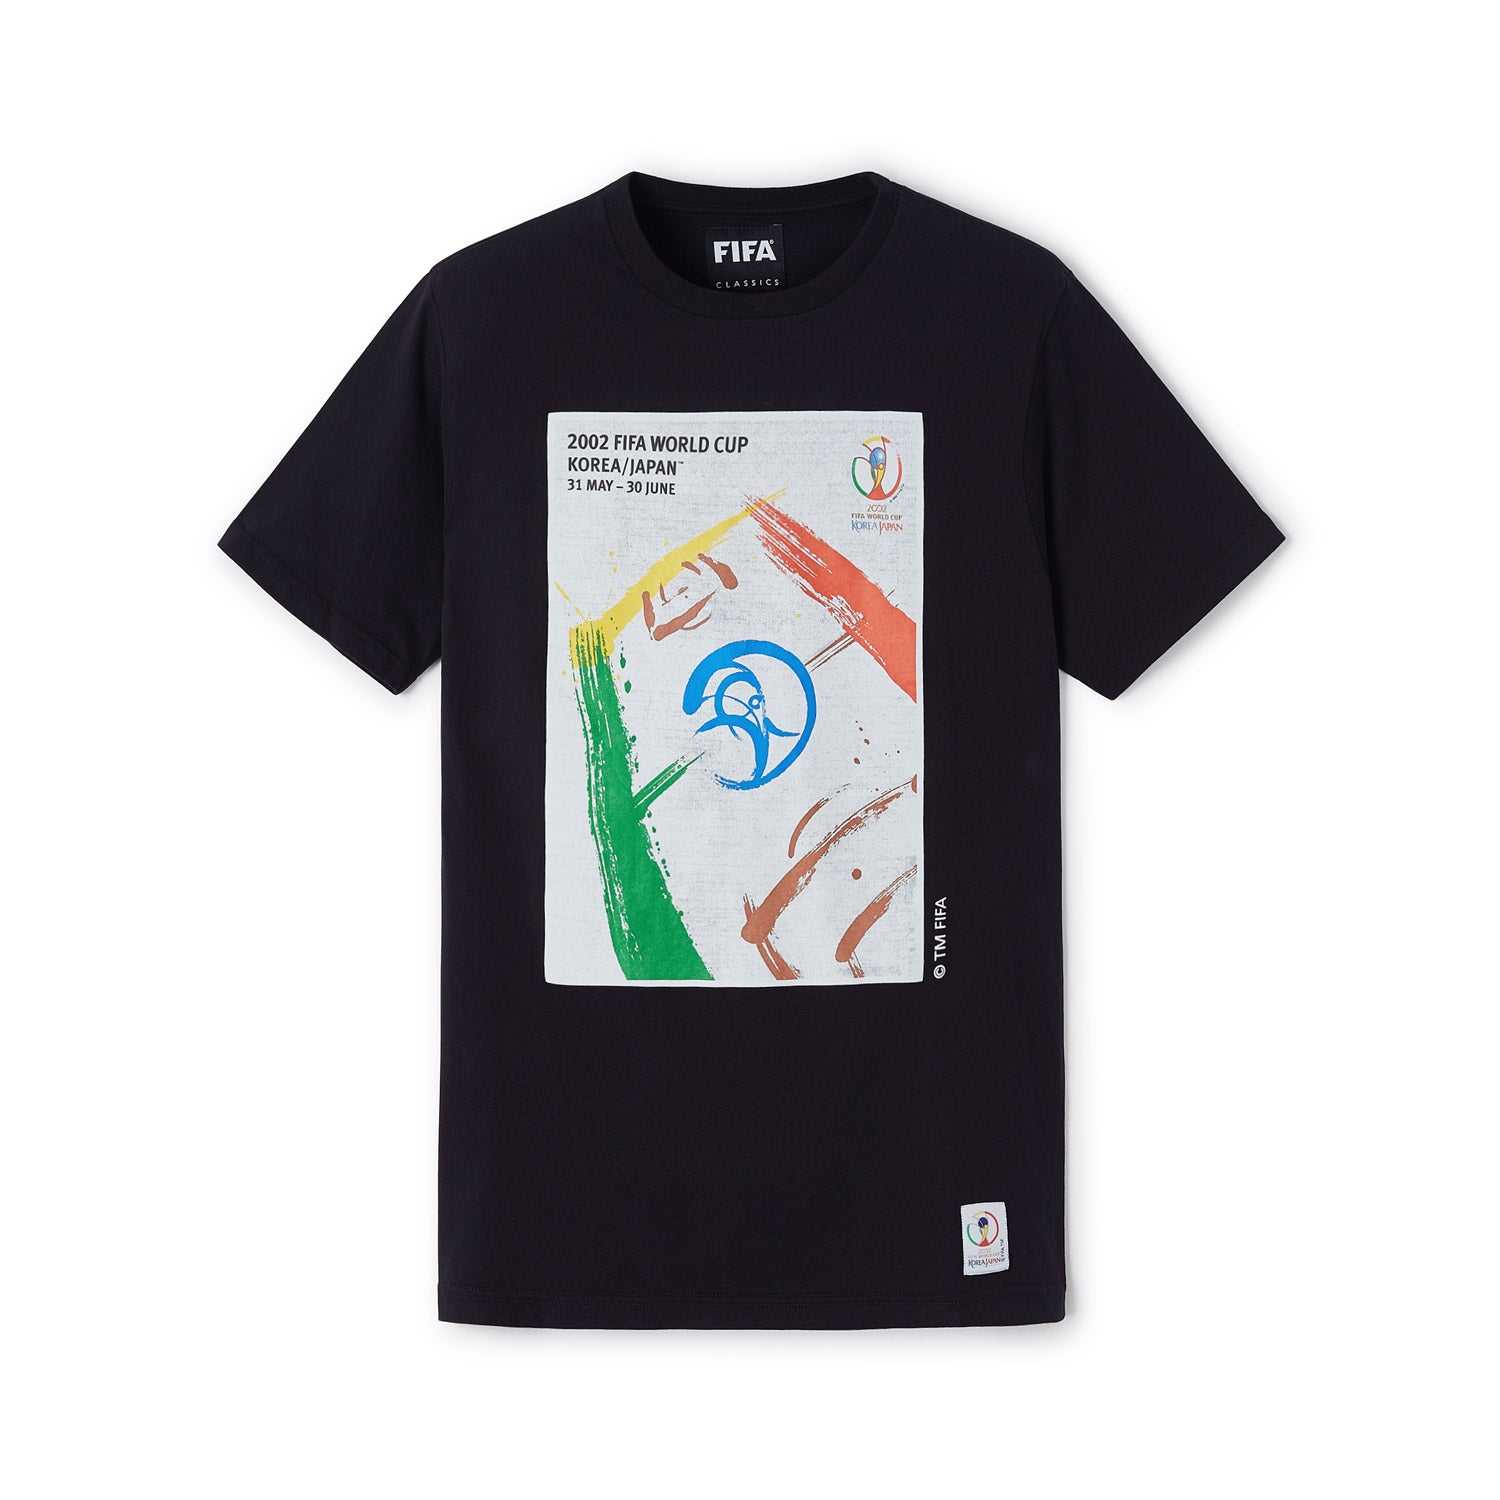 FIFA Rewind 2002 World Cup Poster T-Shirt - Men's